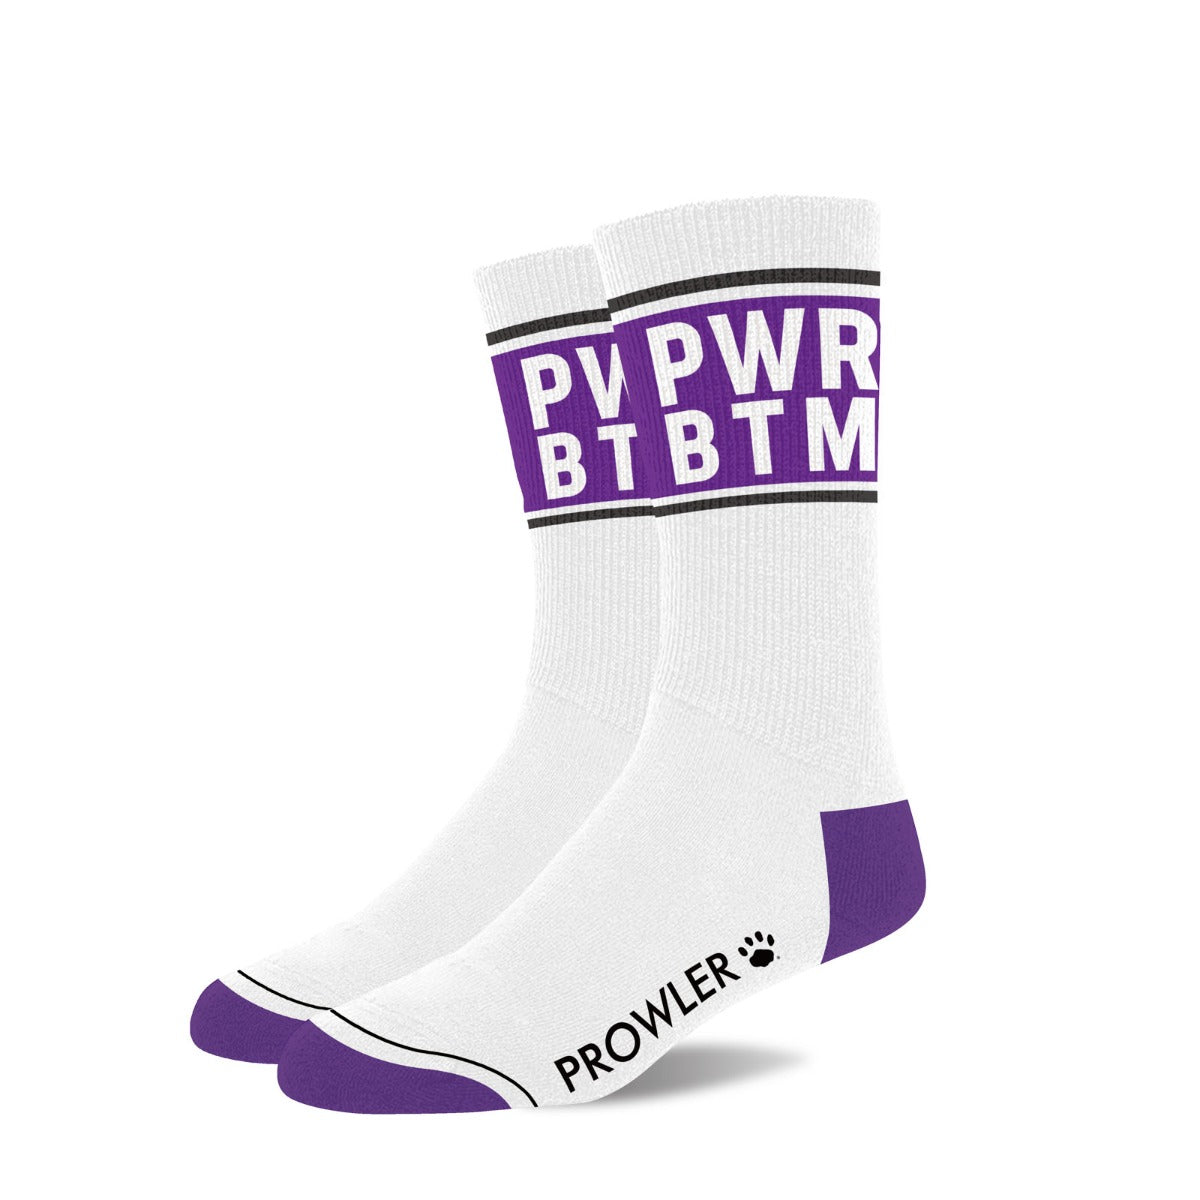 PROWLER Power Bottom Socks